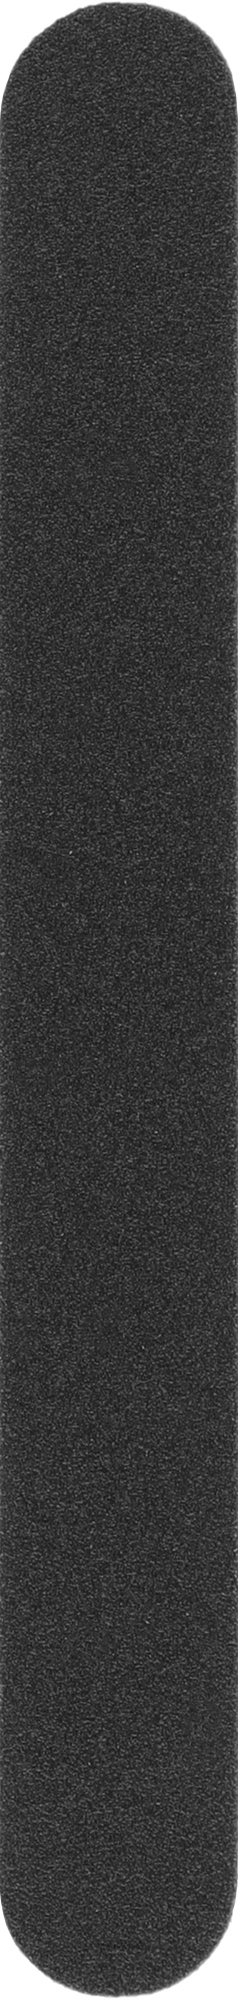 Сменные файлы для пилки без мягкого слоя, ровные, 135 мм, 180 грит, черные - ThePilochki — фото 50шт